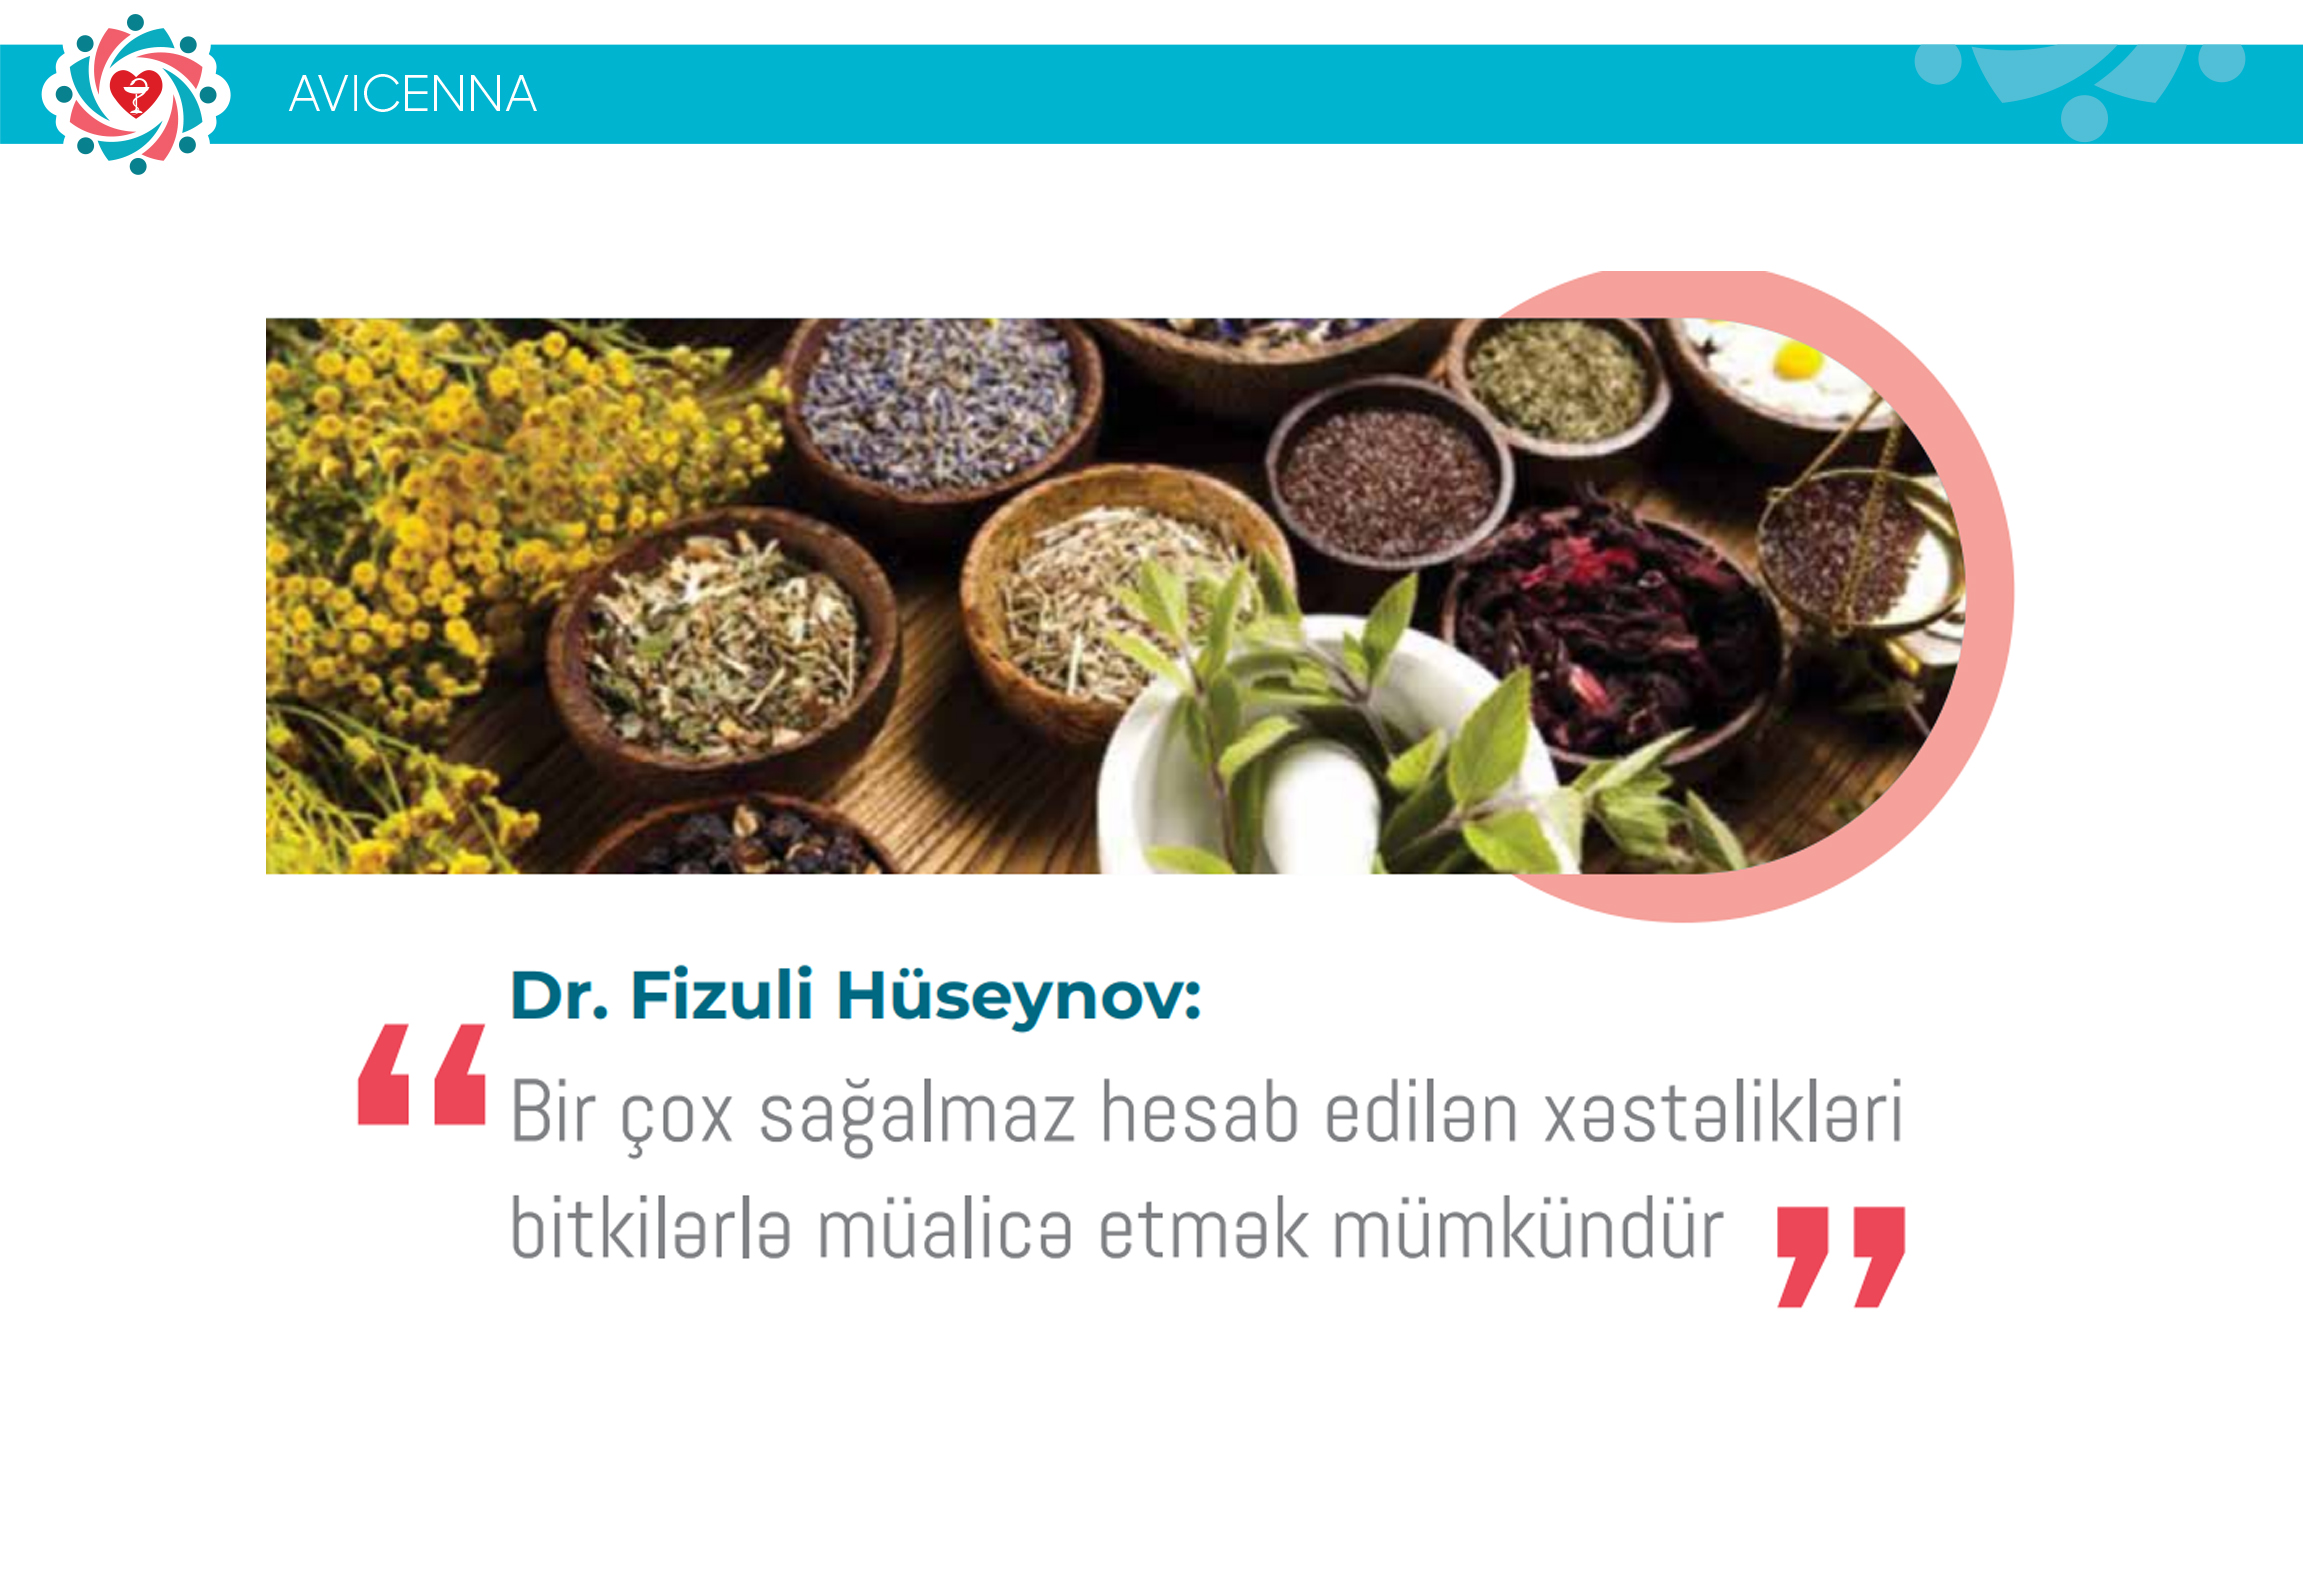 Dr. Fizuli Hüseynov: “Bir çox sağalmaz hesab edilən xəstəlikləri bitkilərlə müalicə etmək mümkündür”